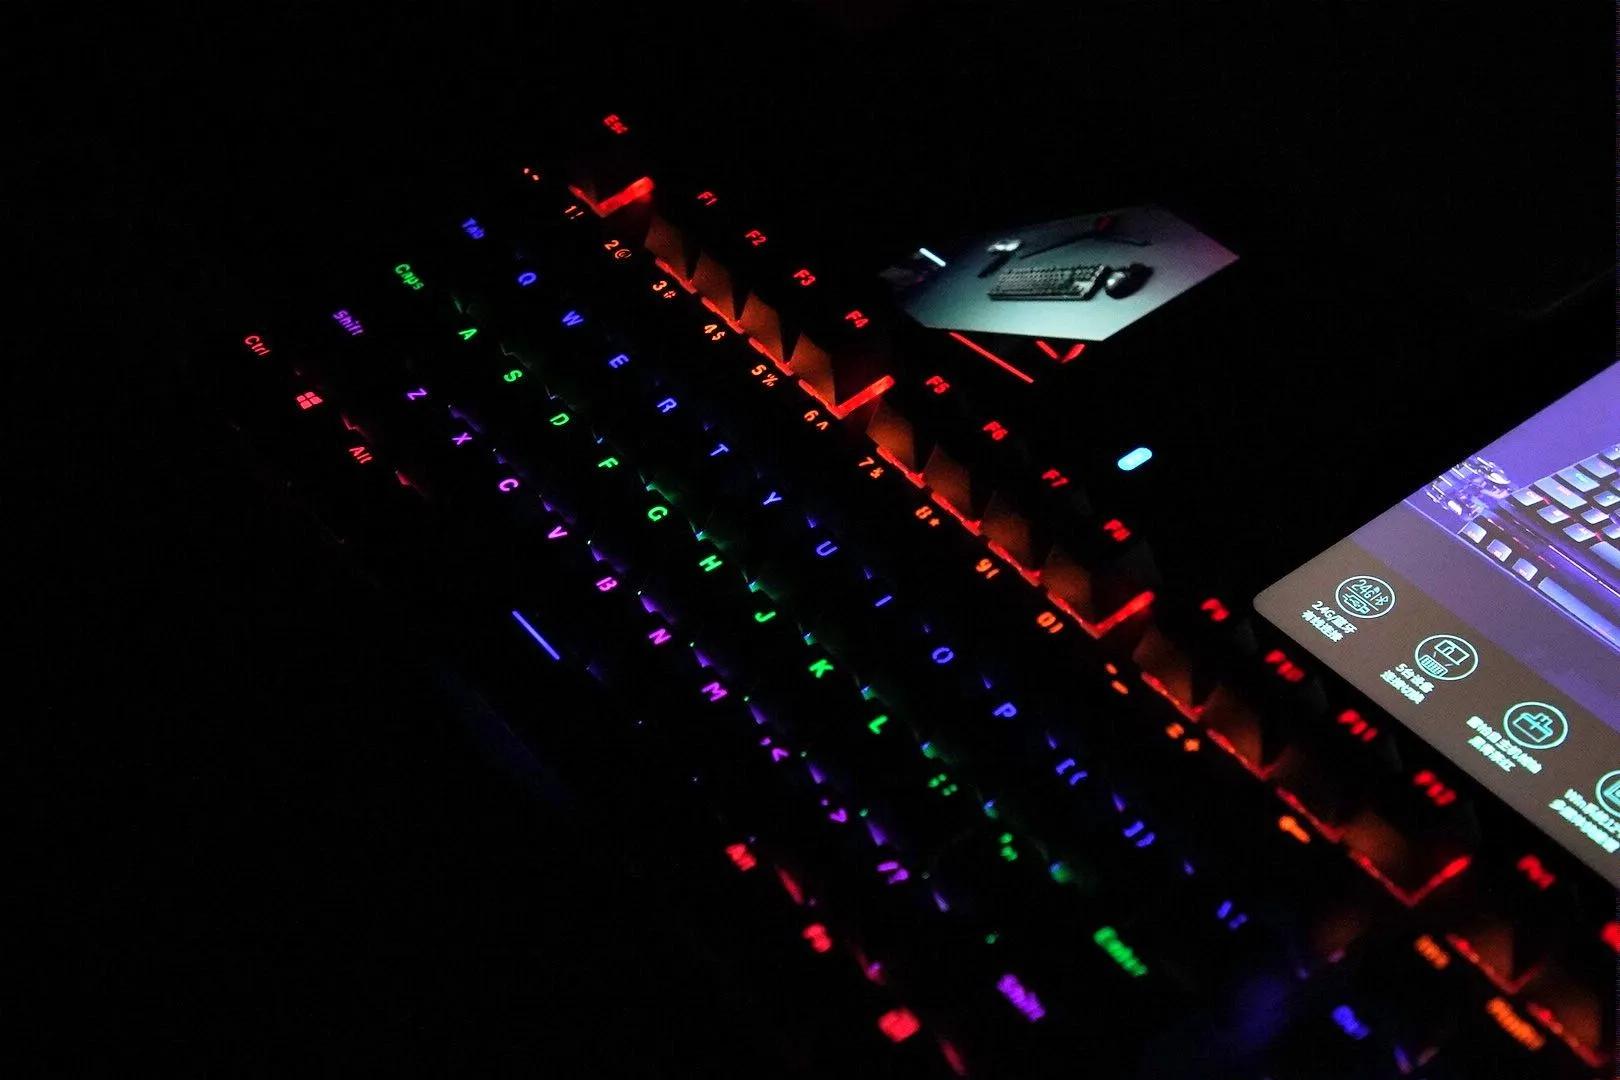 雷柏V500PRO-87多模机械键盘——日常办公键盘升级好选择